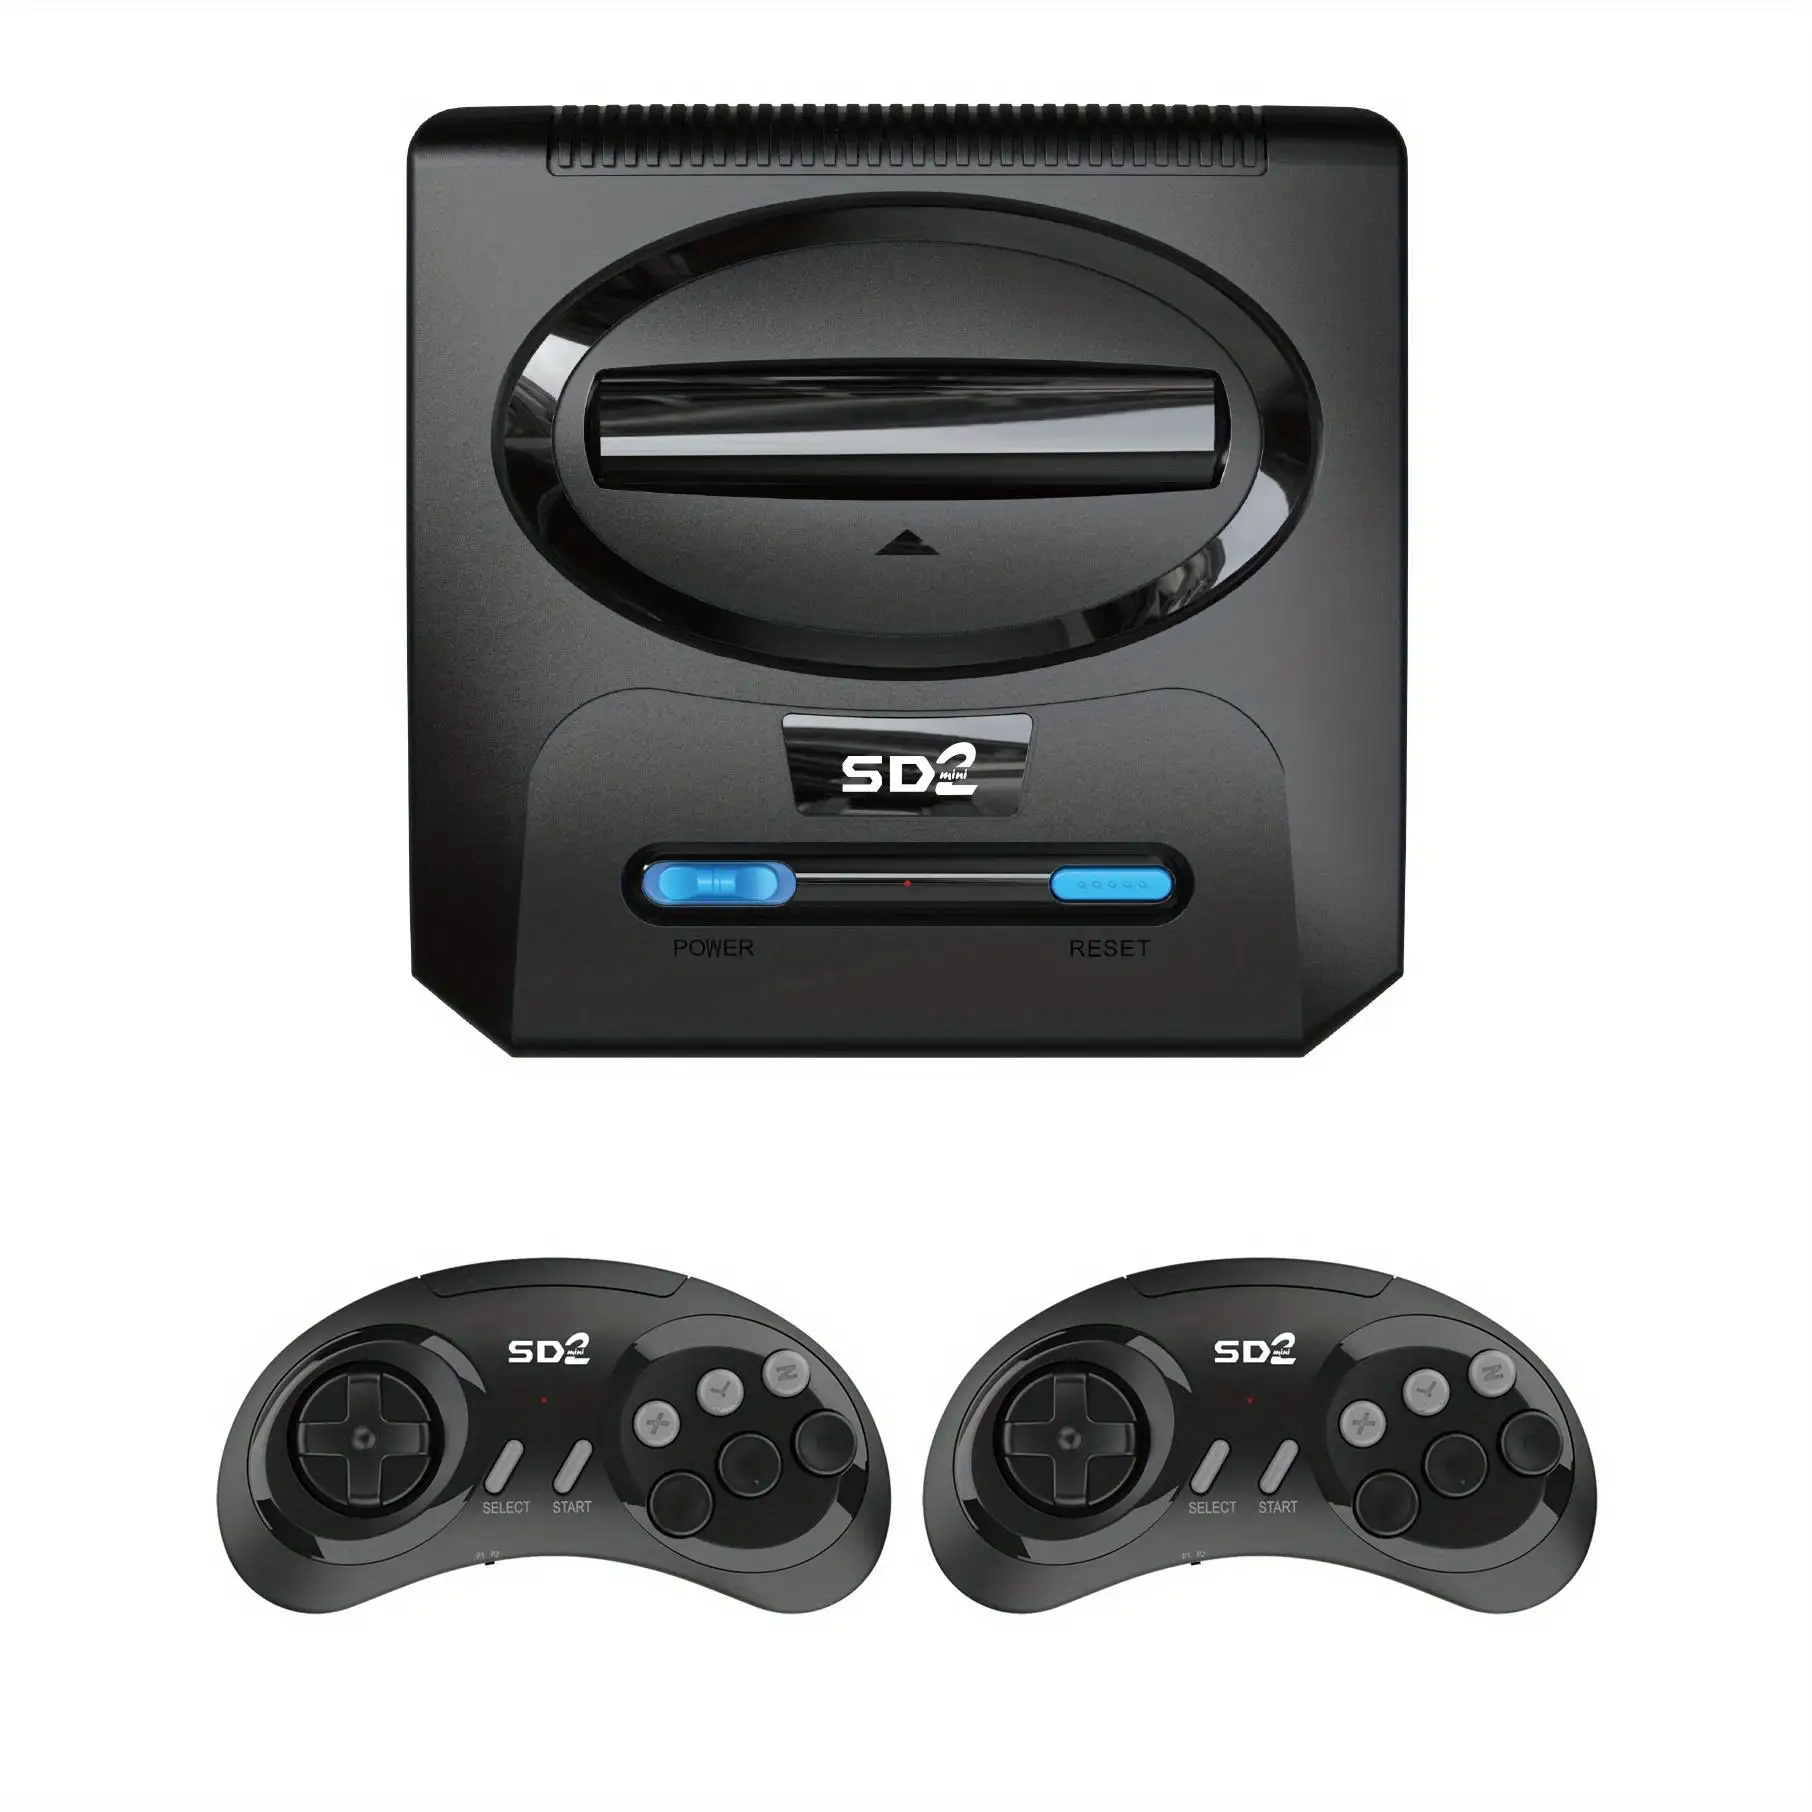 2,4G inalámbrico MD2 16 bits 4K salida HDMI TV Video Plug N Play tarjeta TF consolas de juegos portátiles electrónica